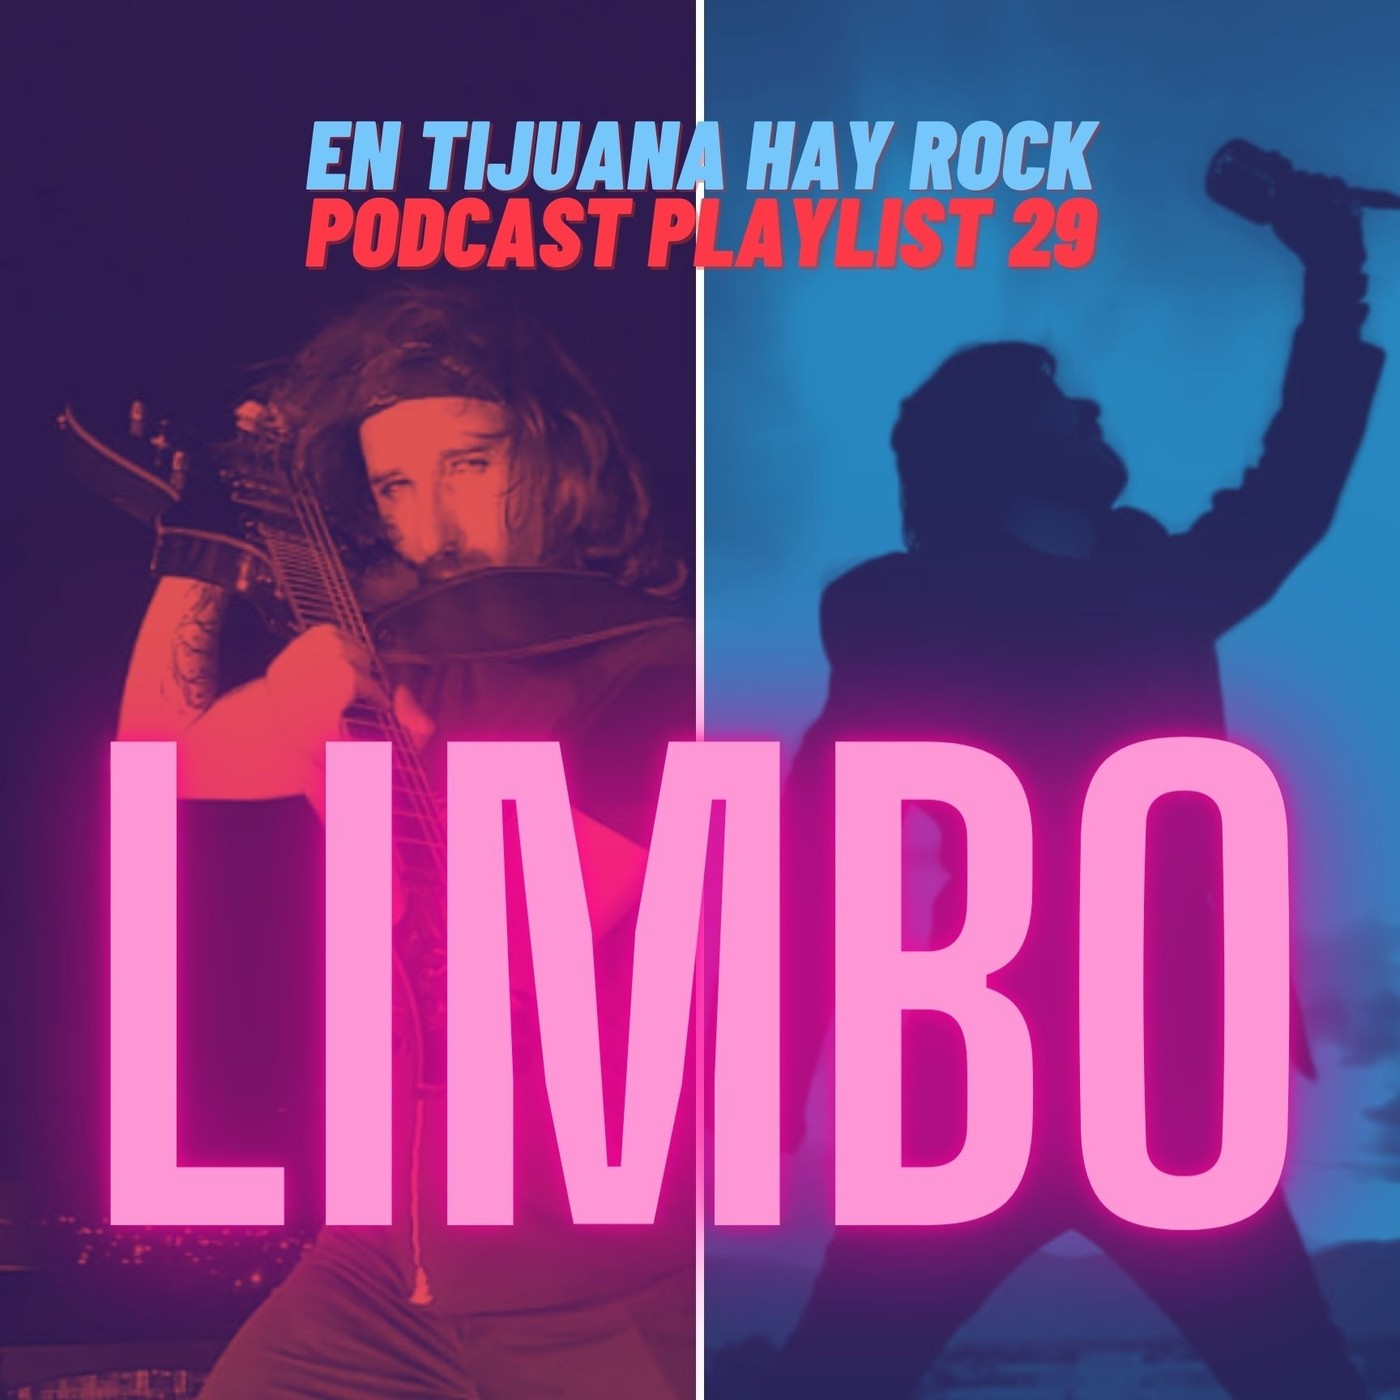 En Tijuana Hay Rock Podcast: Playlist - Programa #29: Entrevista con Limbo Image